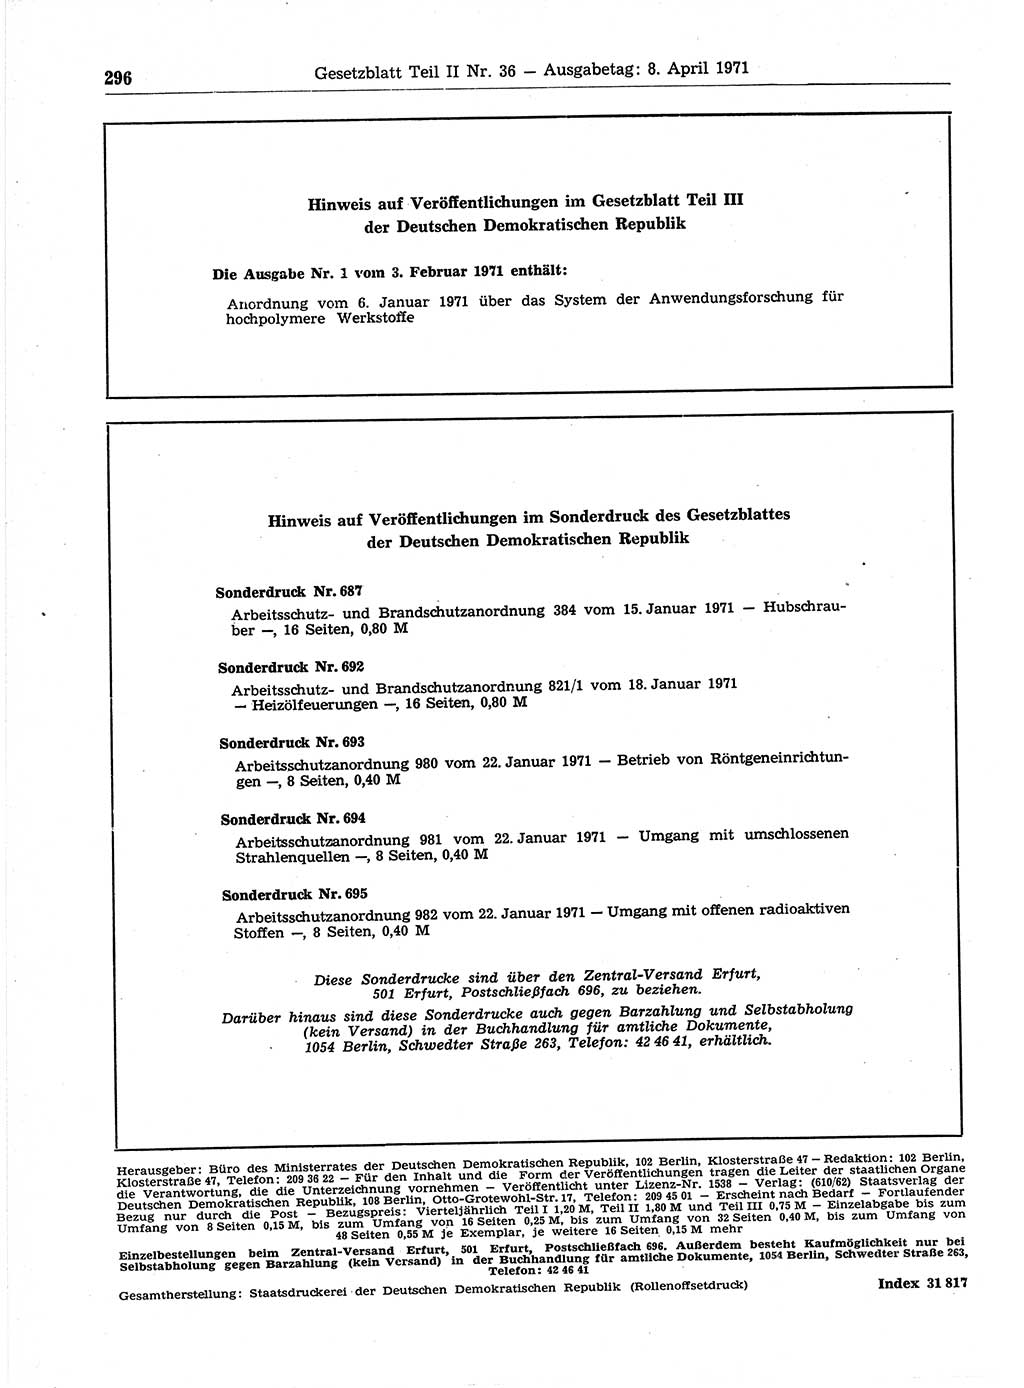 Gesetzblatt (GBl.) der Deutschen Demokratischen Republik (DDR) Teil ⅠⅠ 1971, Seite 296 (GBl. DDR ⅠⅠ 1971, S. 296)